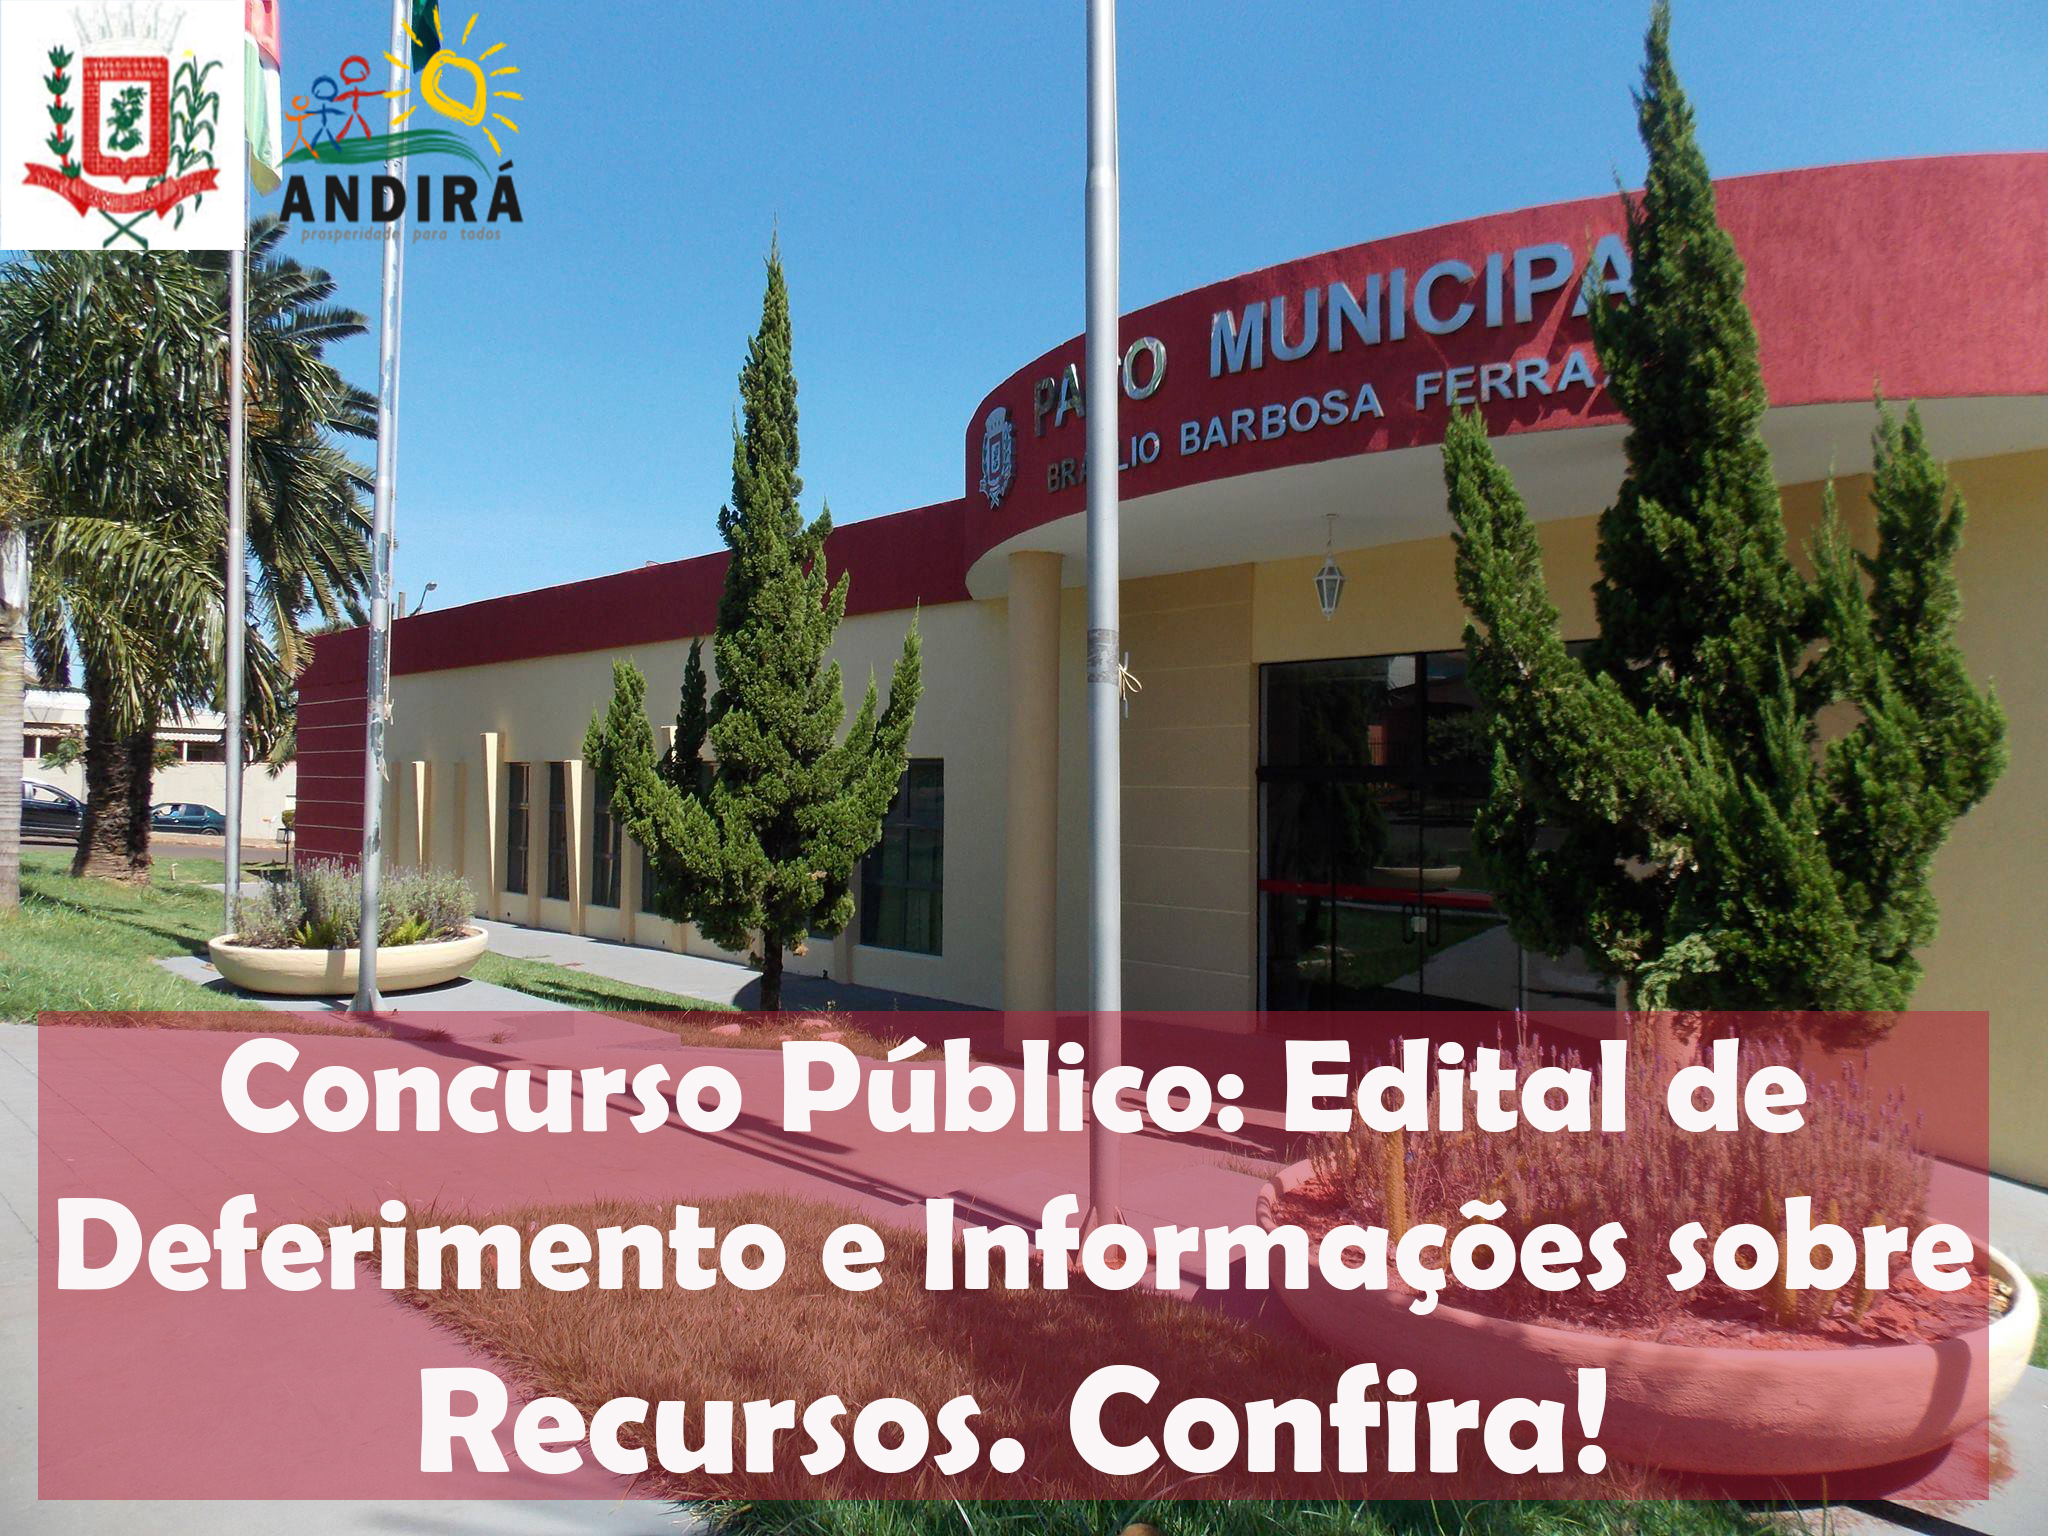 Prefeitura publica edital de deferimento do Concurso Público e informações sobre o recurso. Confira!